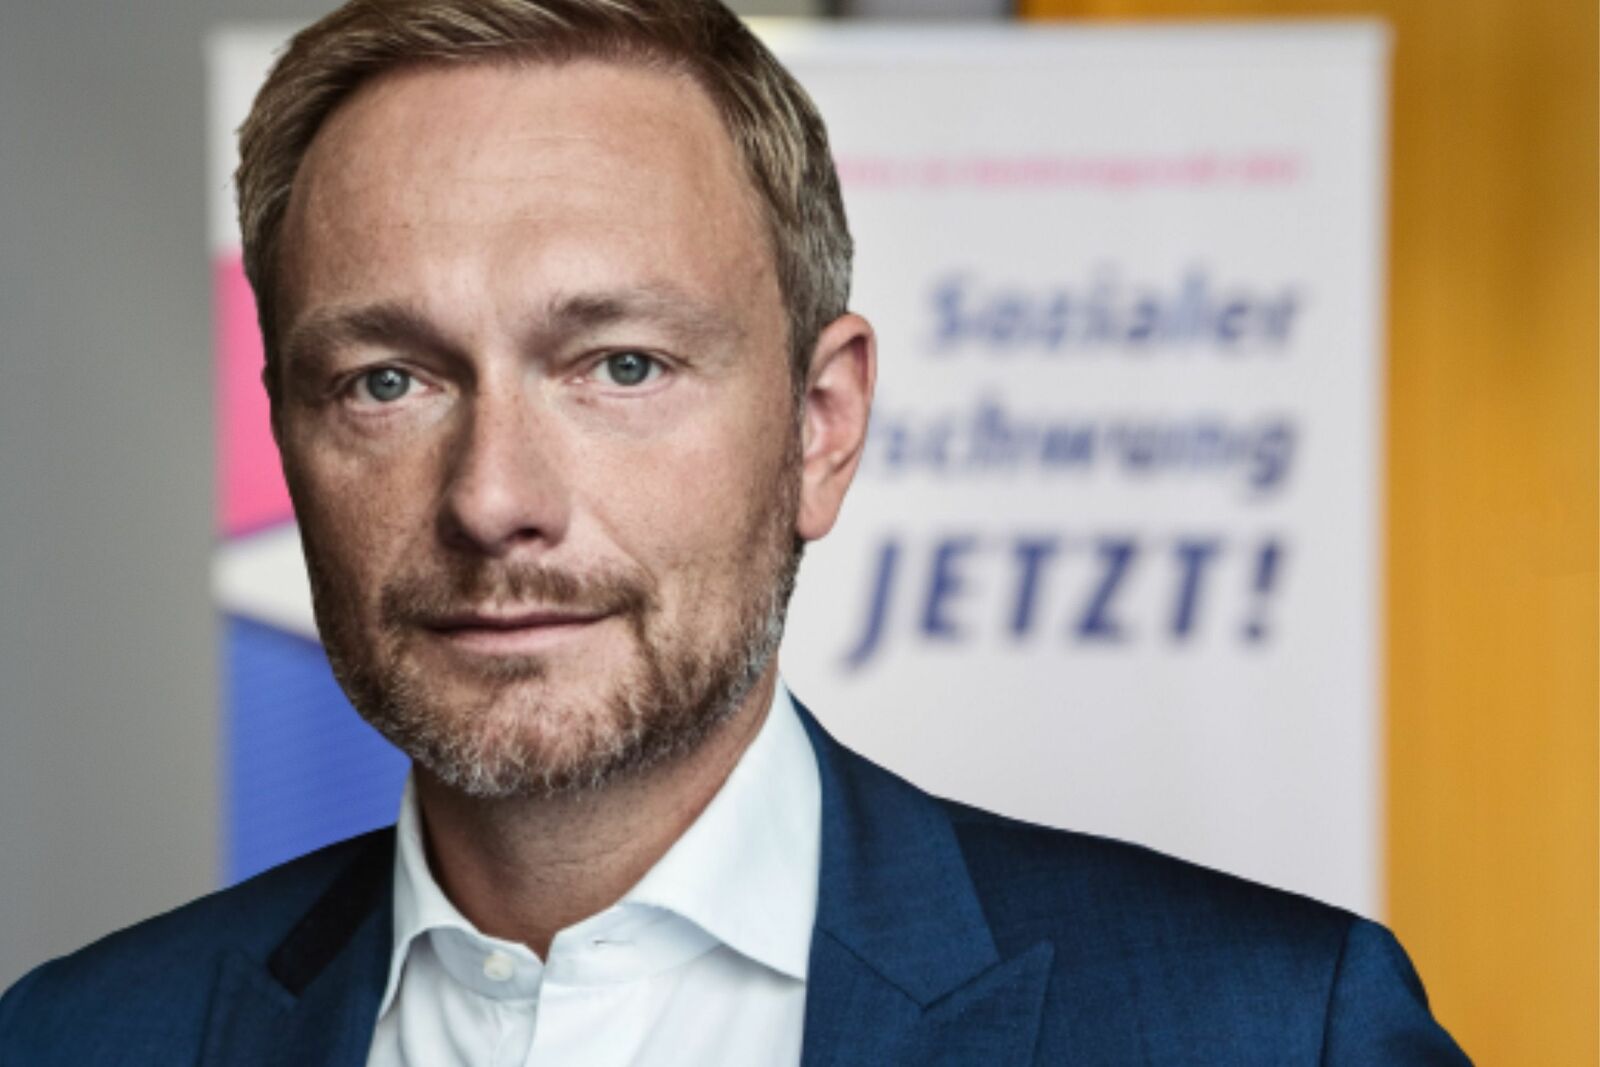 Das Portraitfoto zeigt Christian Lindner vor dem Hintergrund der VdK-Kampagne "Sozialer Aufschwung jetzt!"